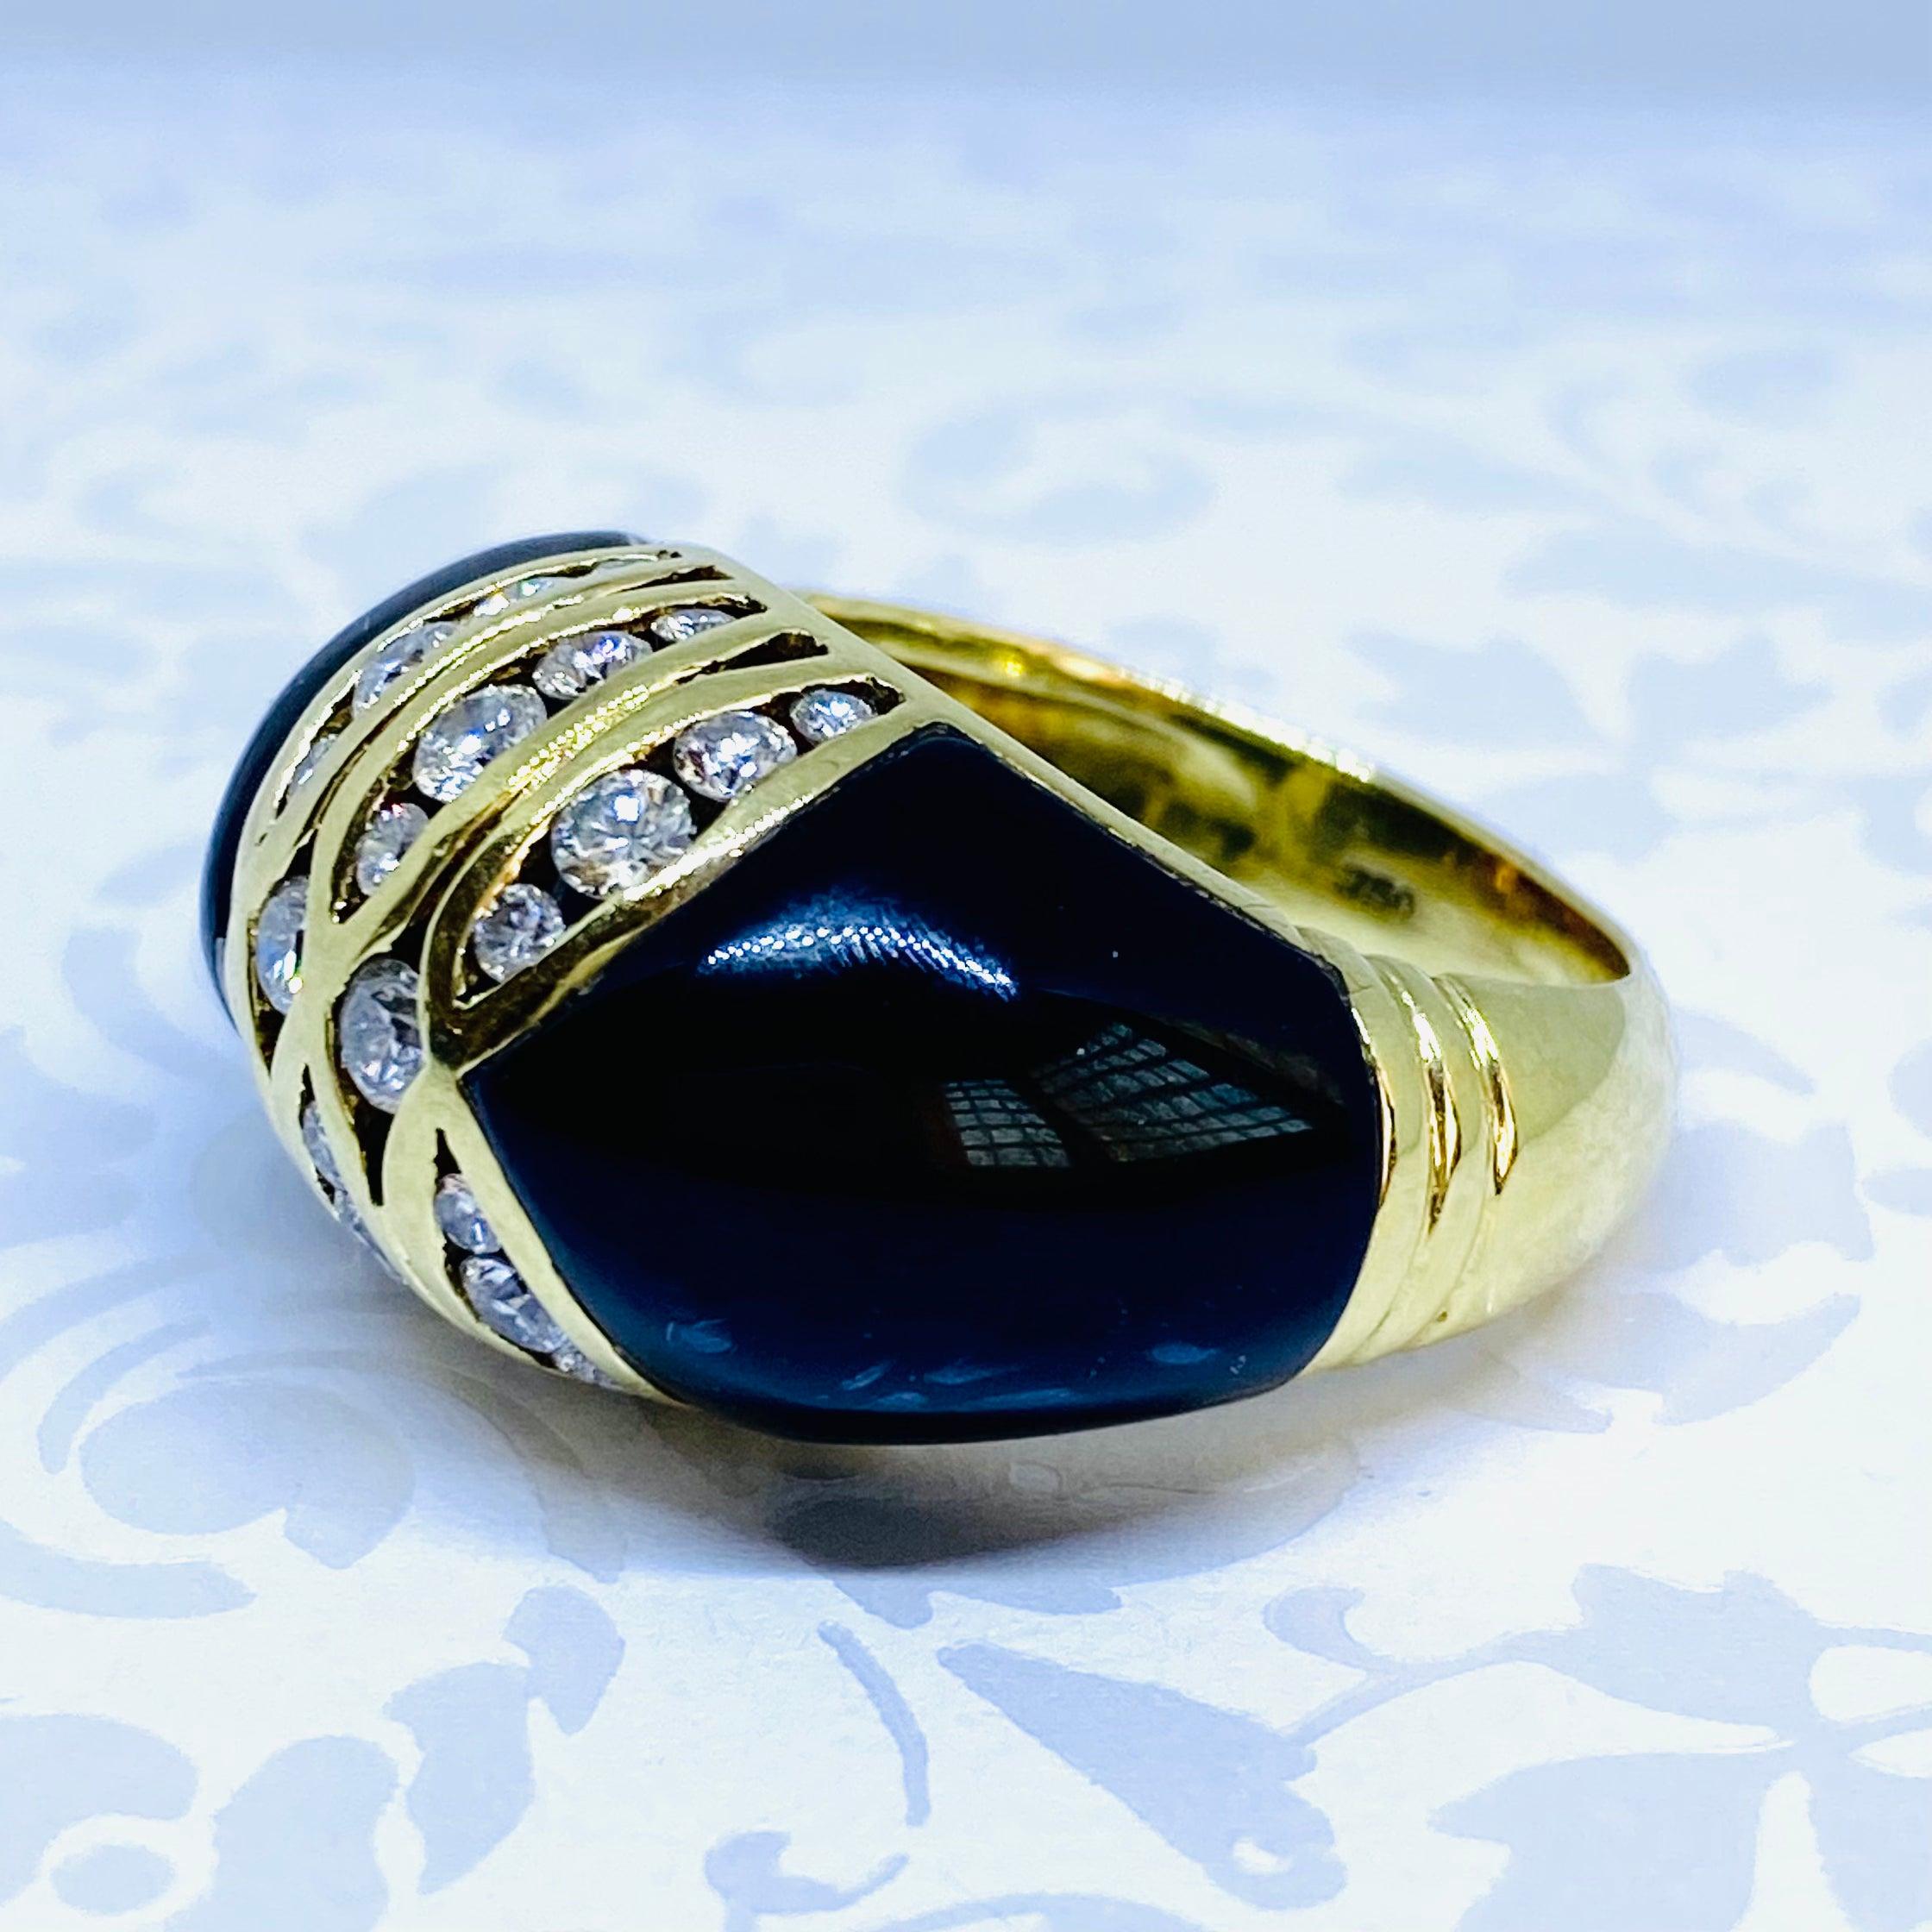 Der aus 18-karätigem Gelbgold gefertigte Ring hat ein kuppelförmiges Design mit kanalgefassten Diamanten in der Mitte, die von speziell geschliffenen schwarzen Onyx-Schultern getragen werden.
26 runde Diamanten im Brillantschliff: 1,00ctw. Farbe: